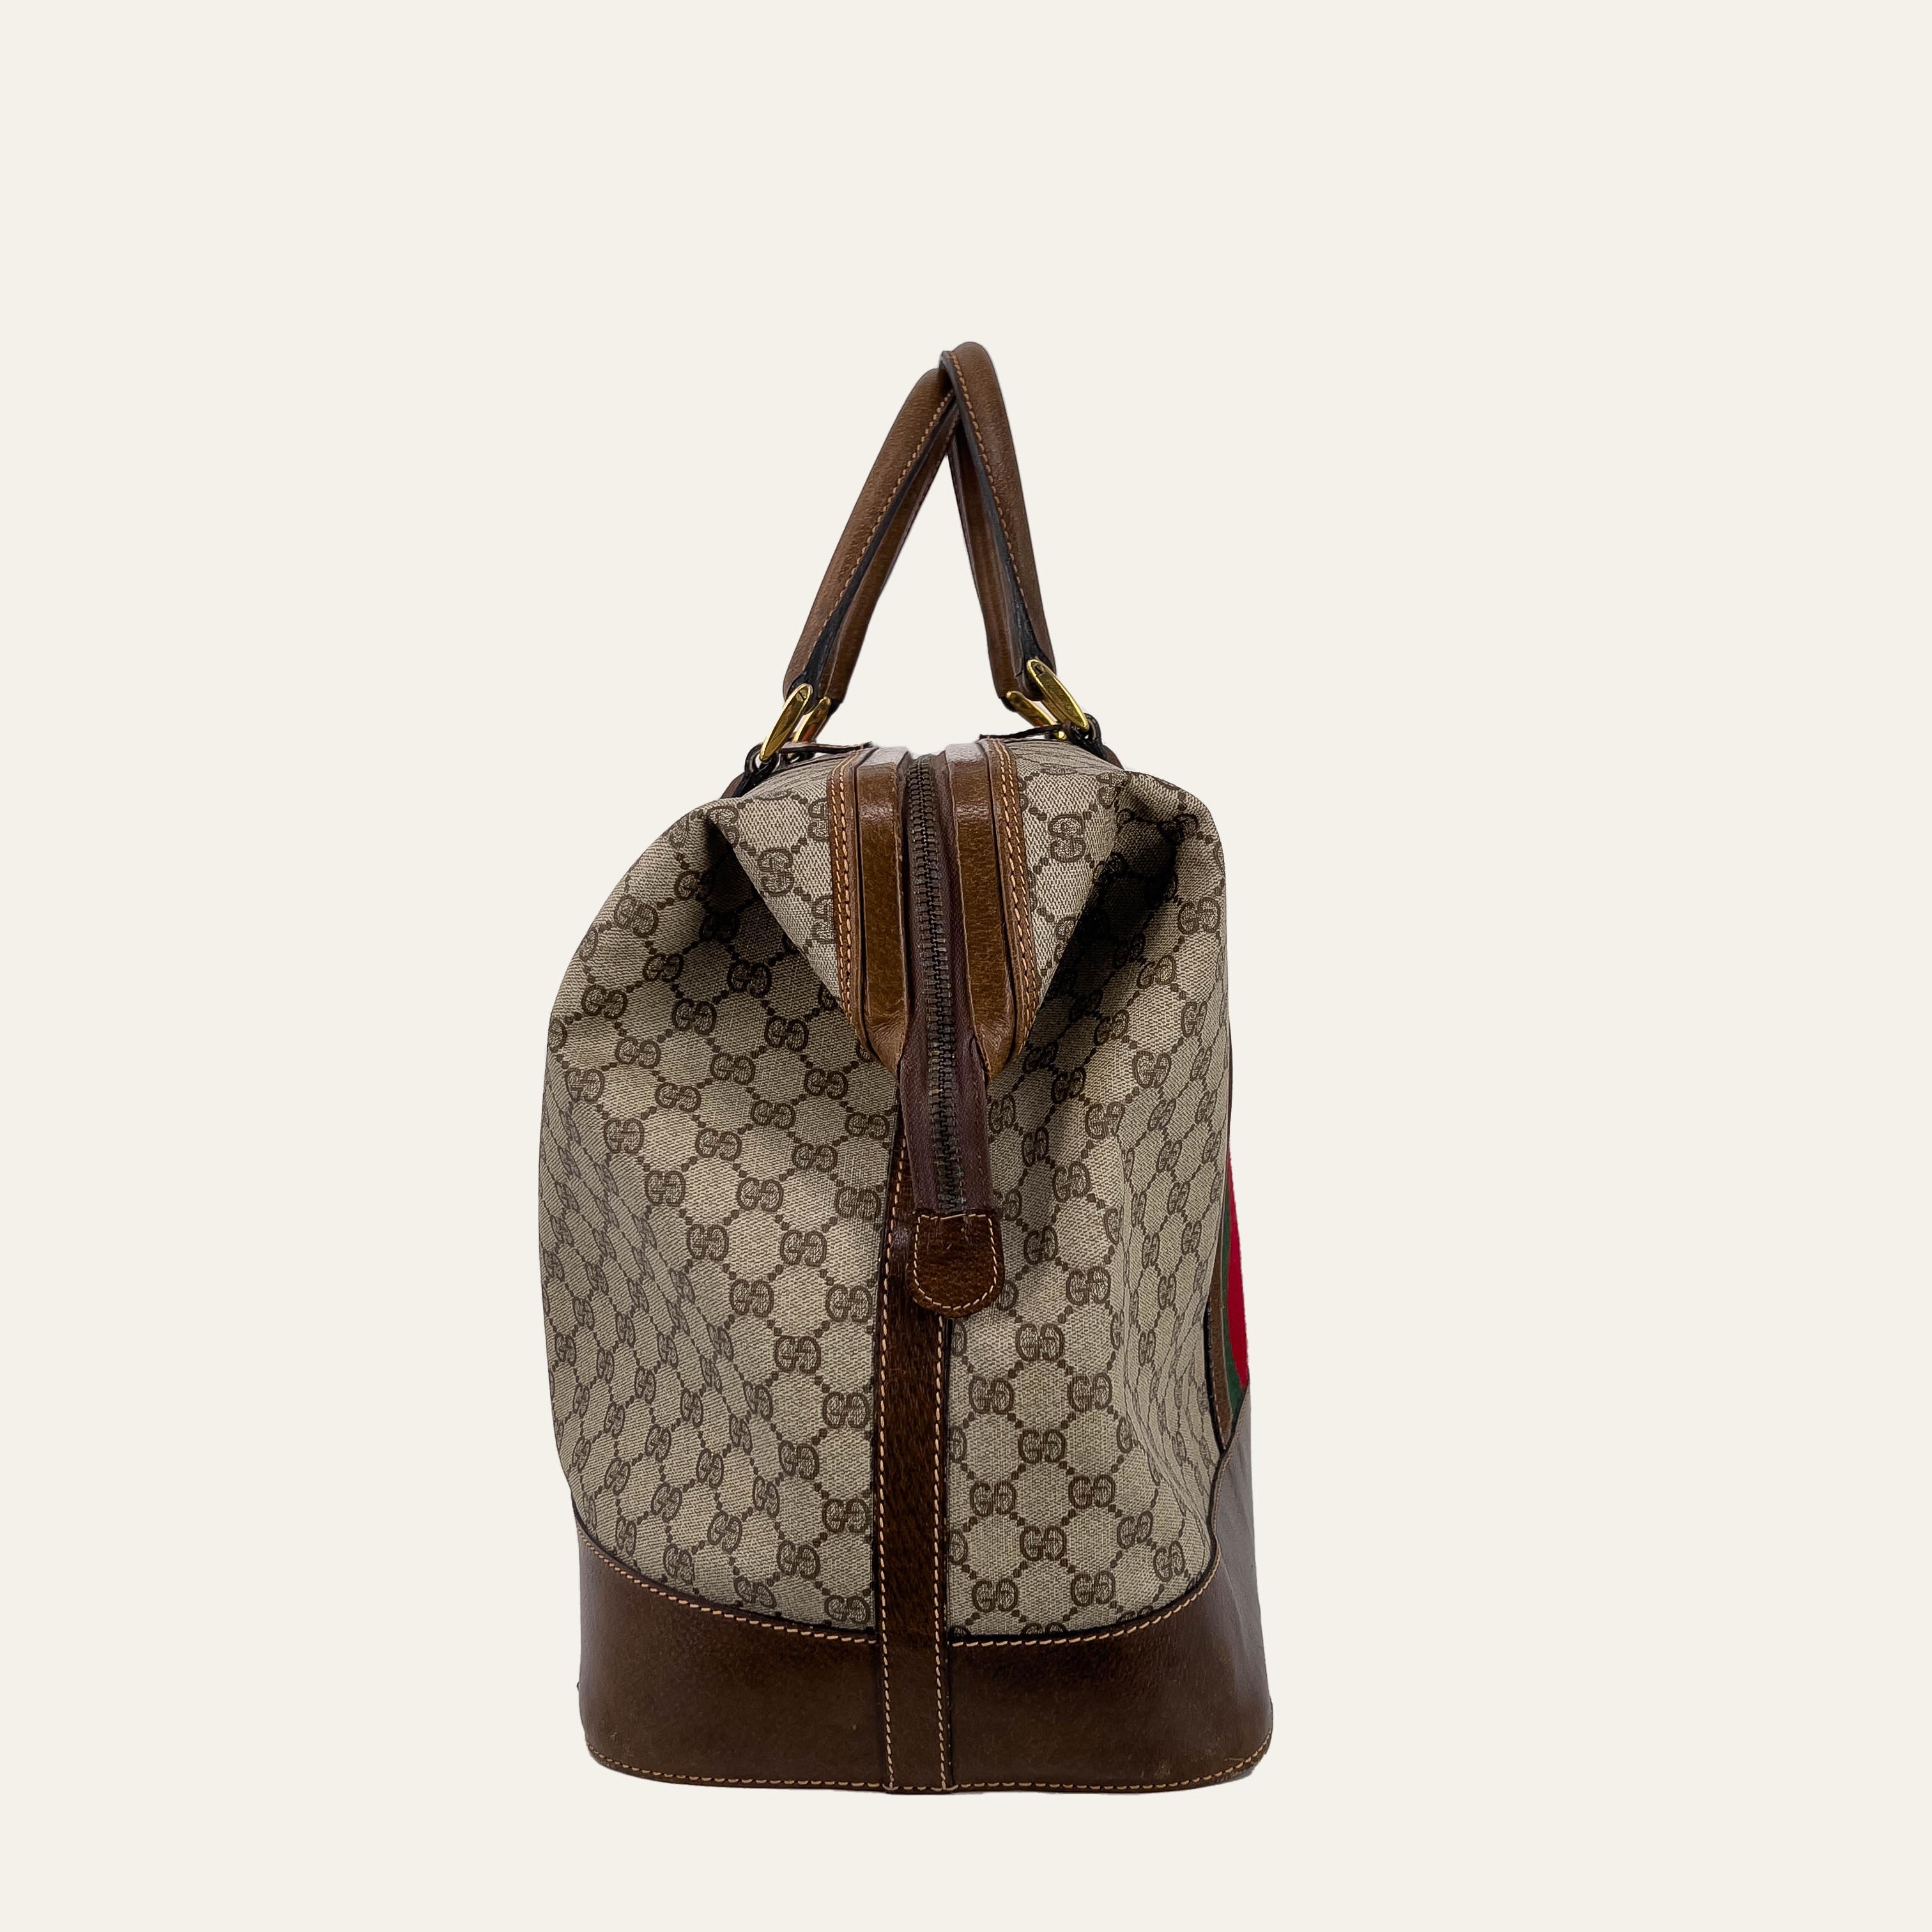 Vintage Gucci Doctor's Travel Bag